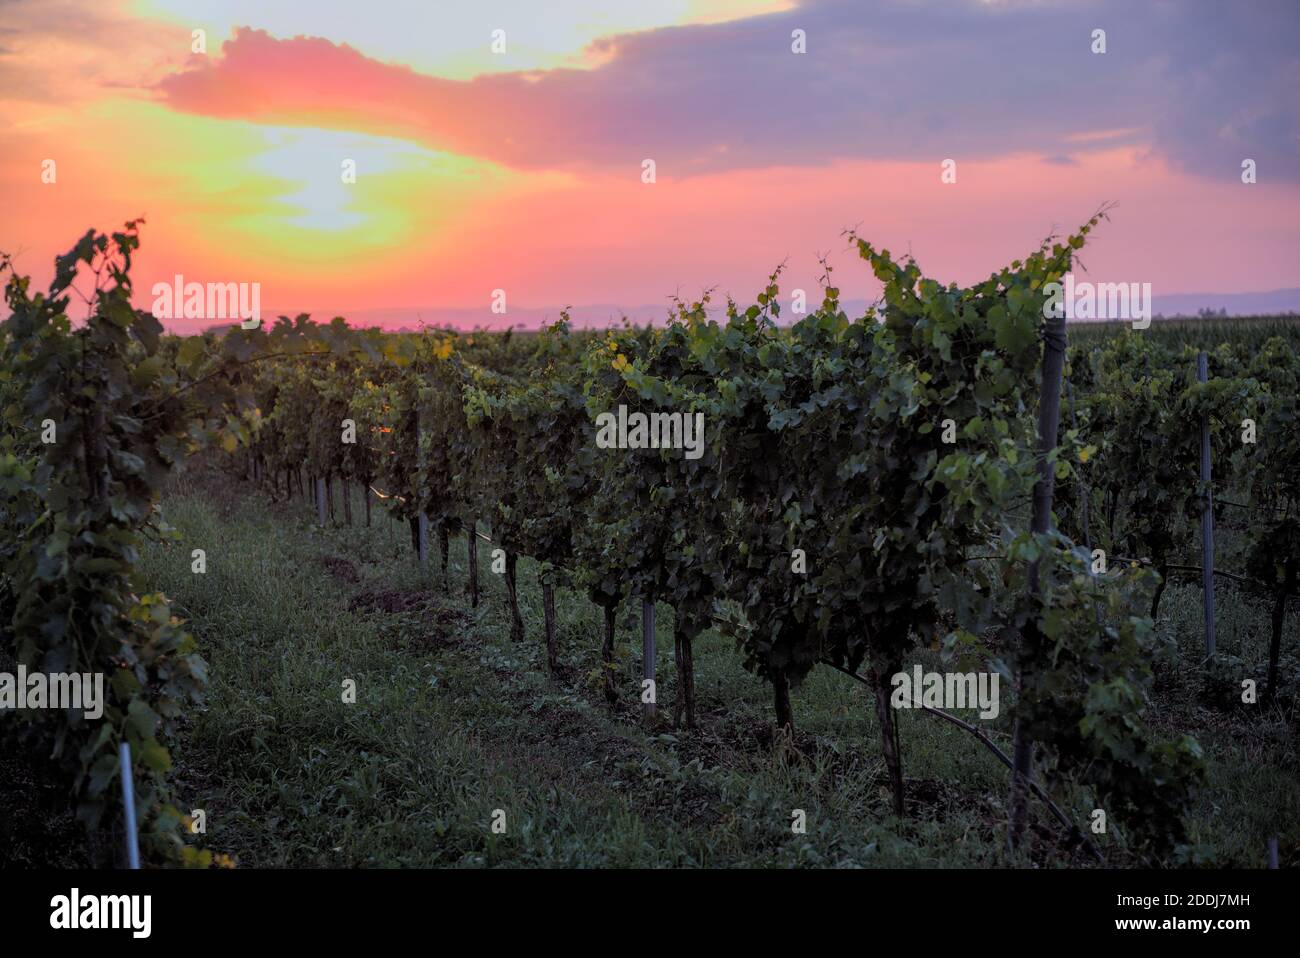 Sonnenuntergang in einem Weingarten Stock Photo